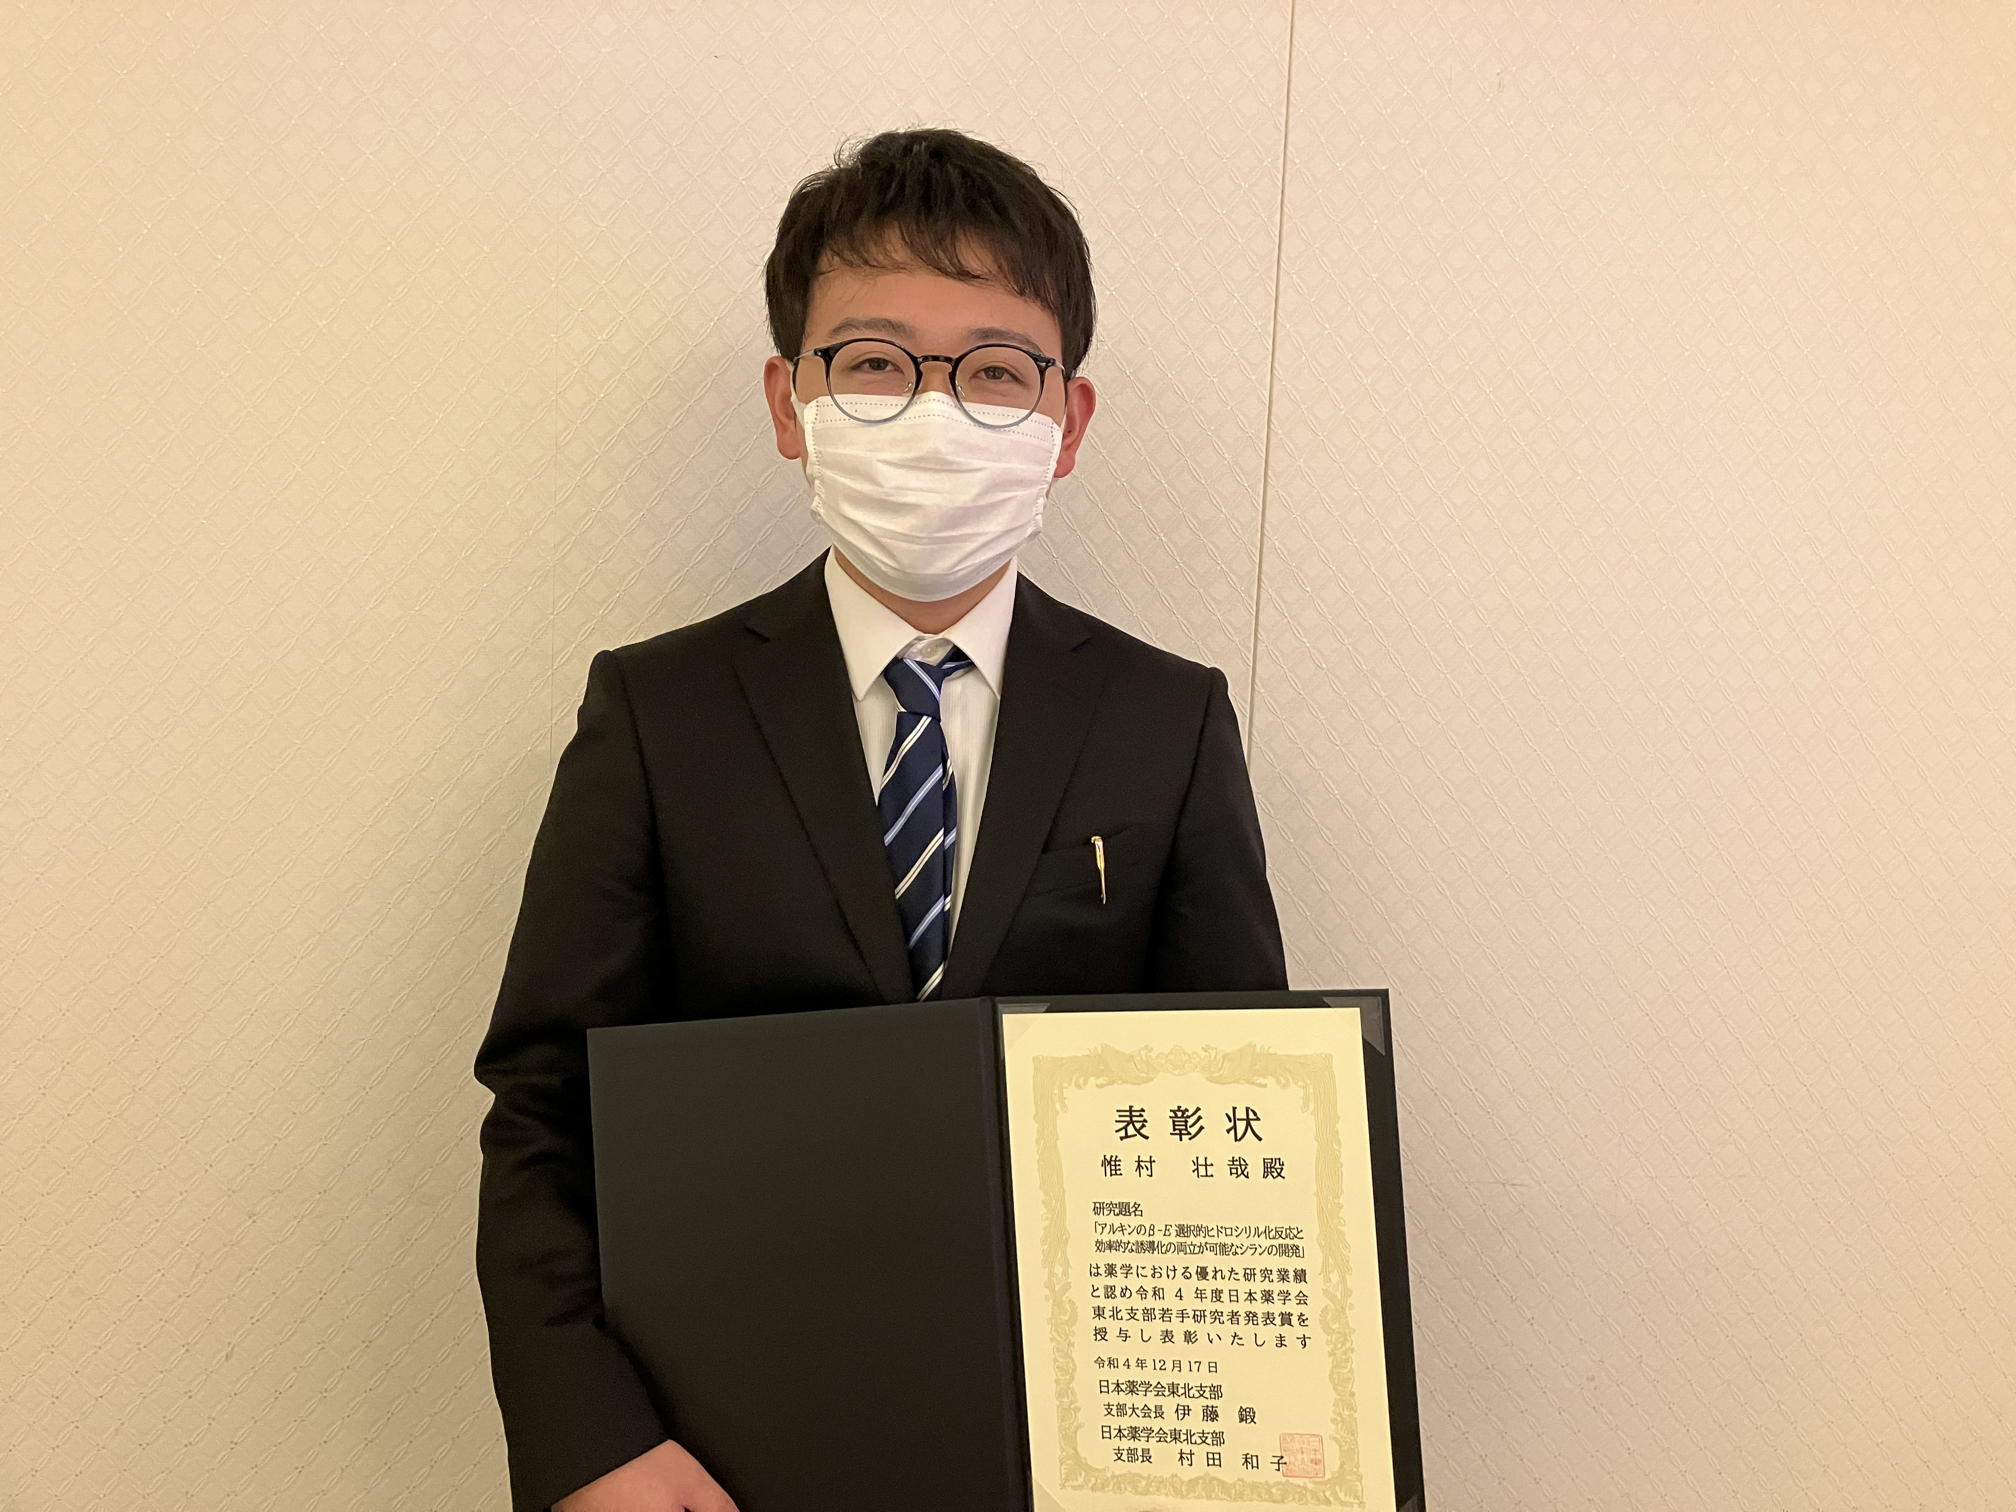 惟村くん、東北支部会で優秀発表賞を受賞。